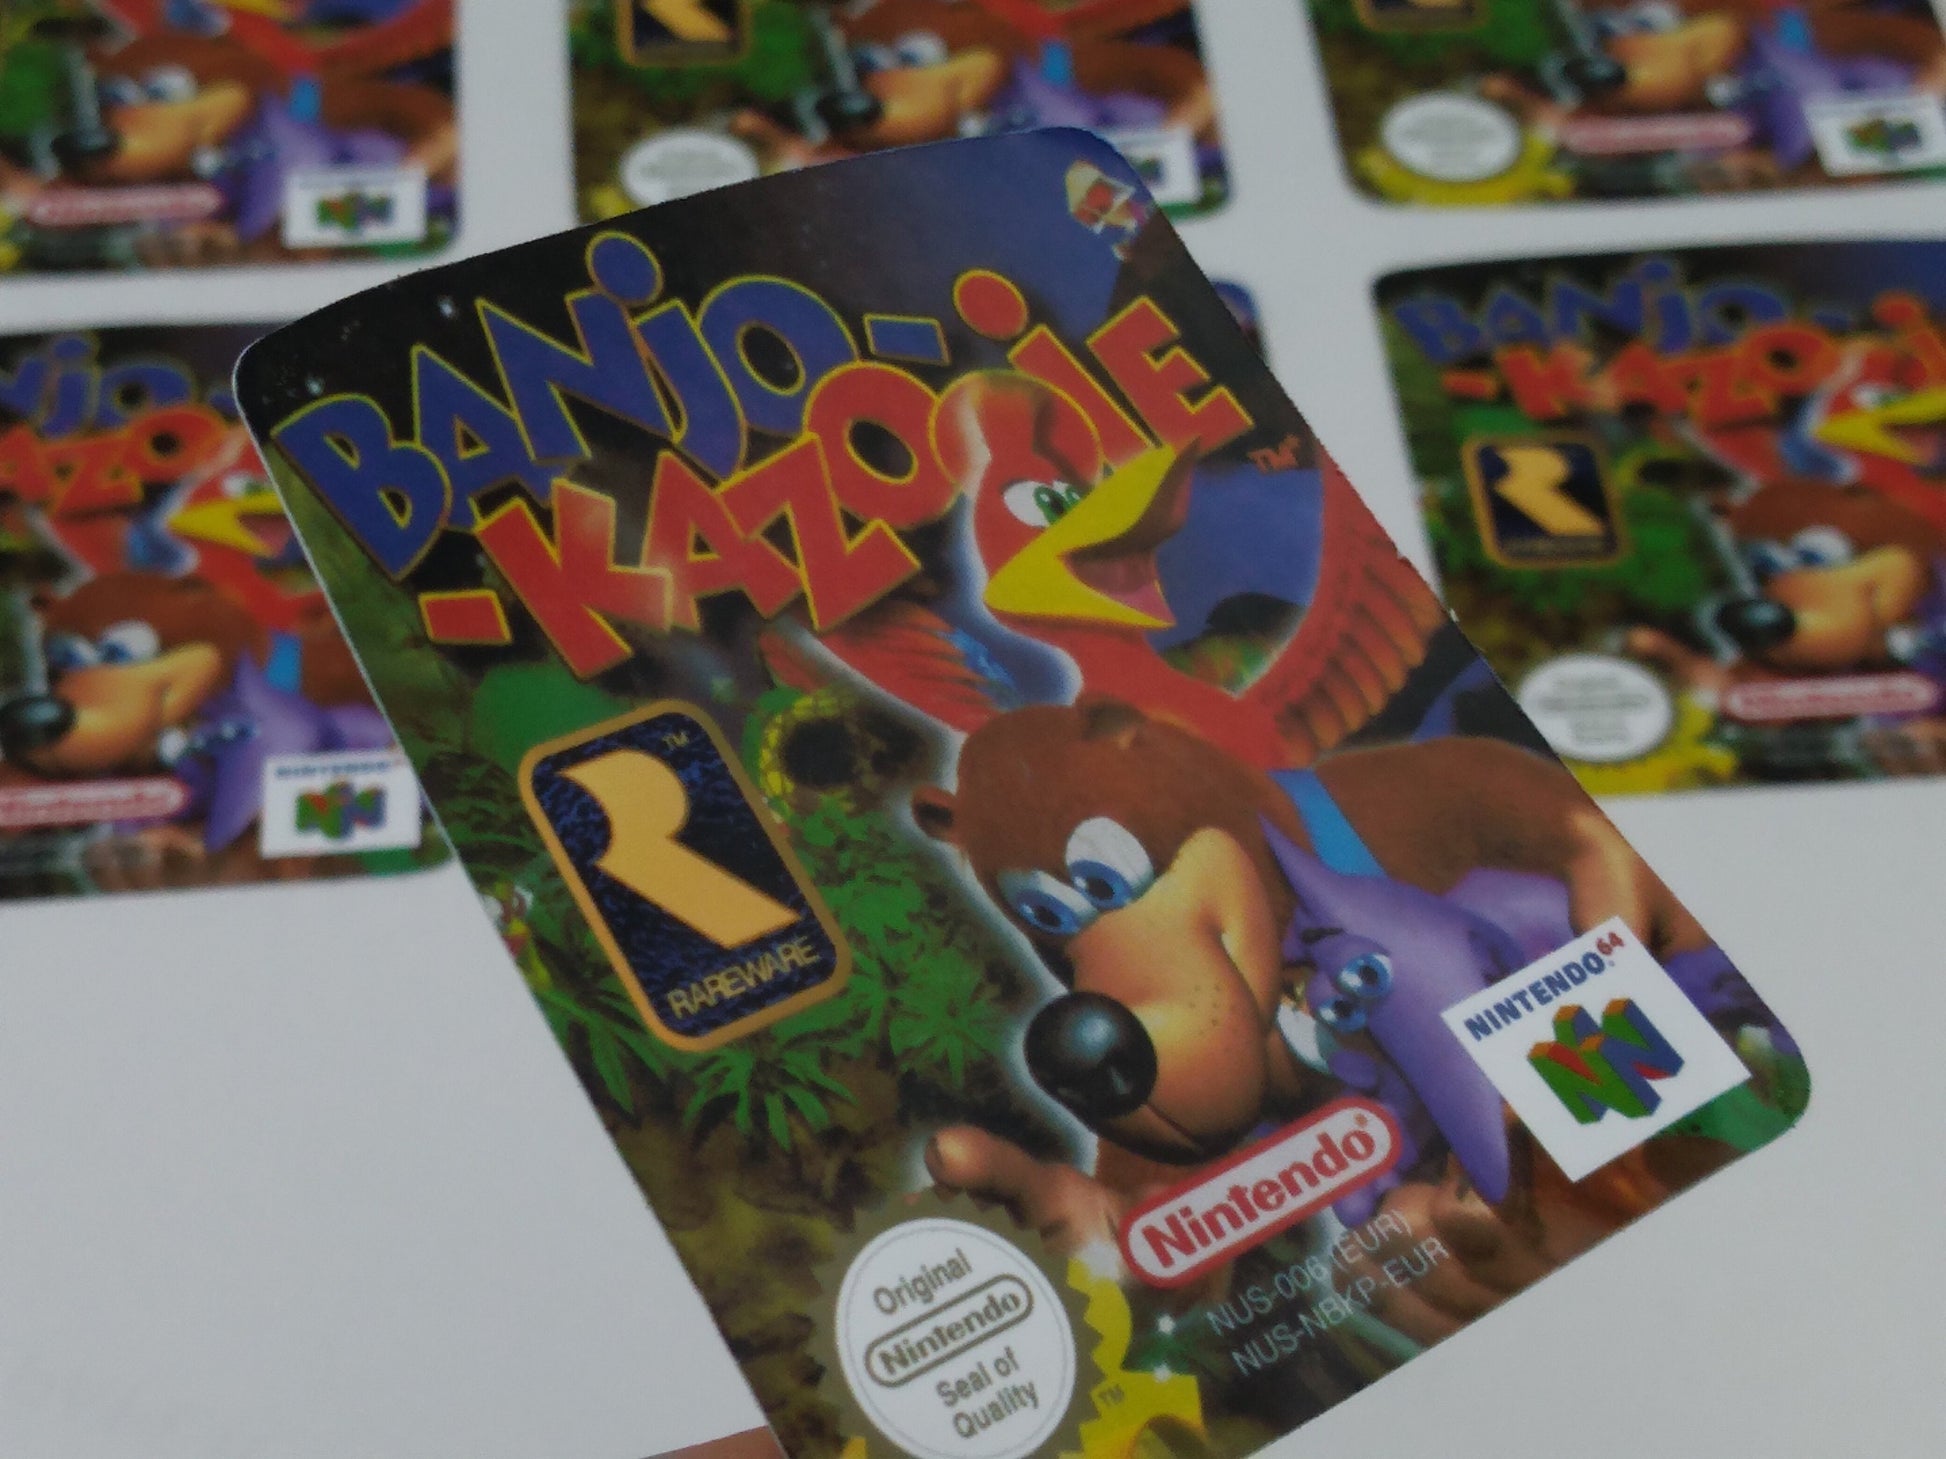 Nintendo 64 Game Cartridge - Banjo Kazooie